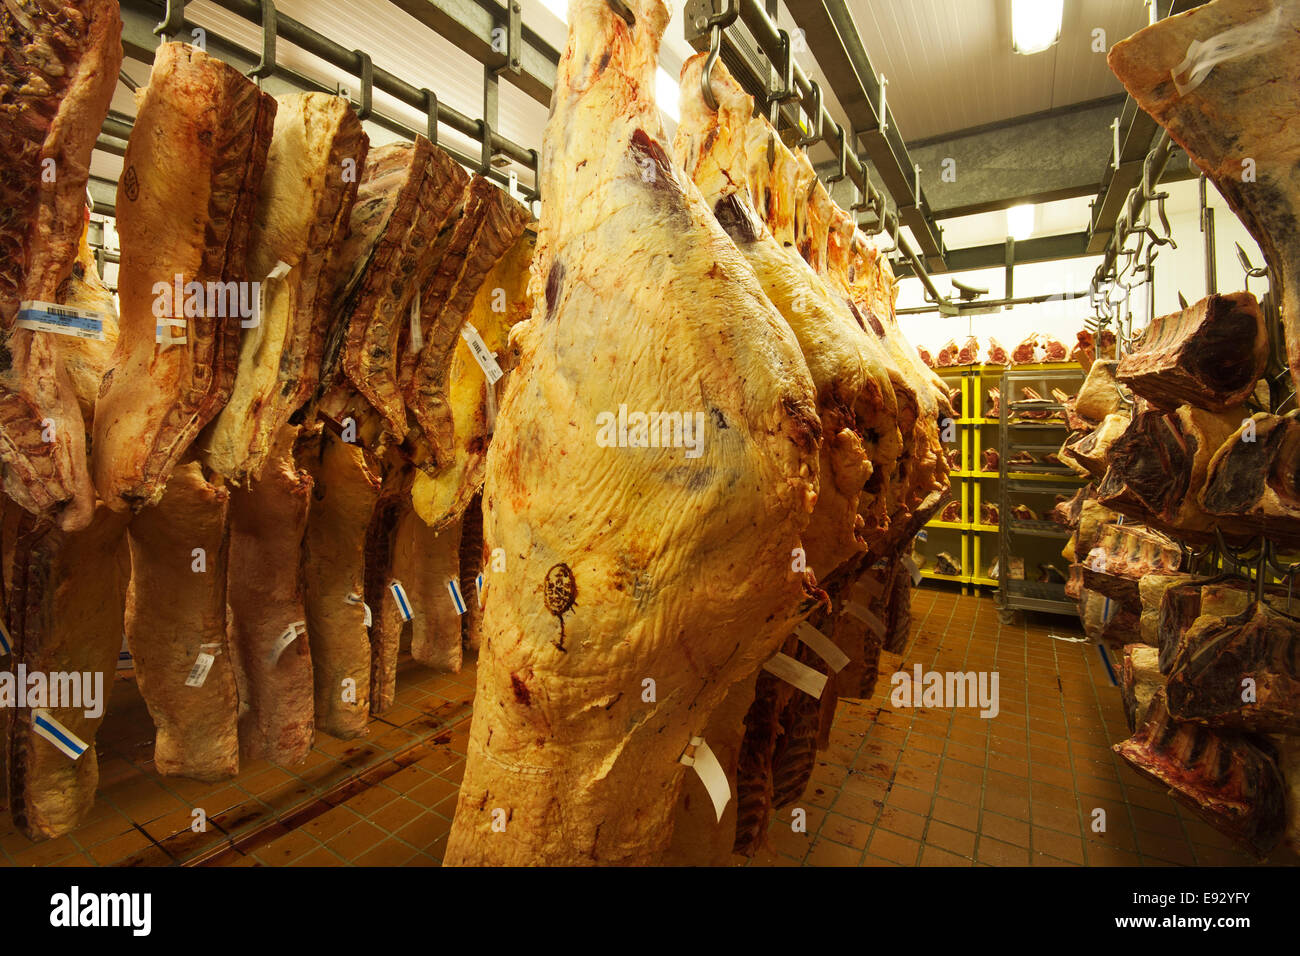 Rindfleisch in einem Kühlhaus hängend Stockfoto